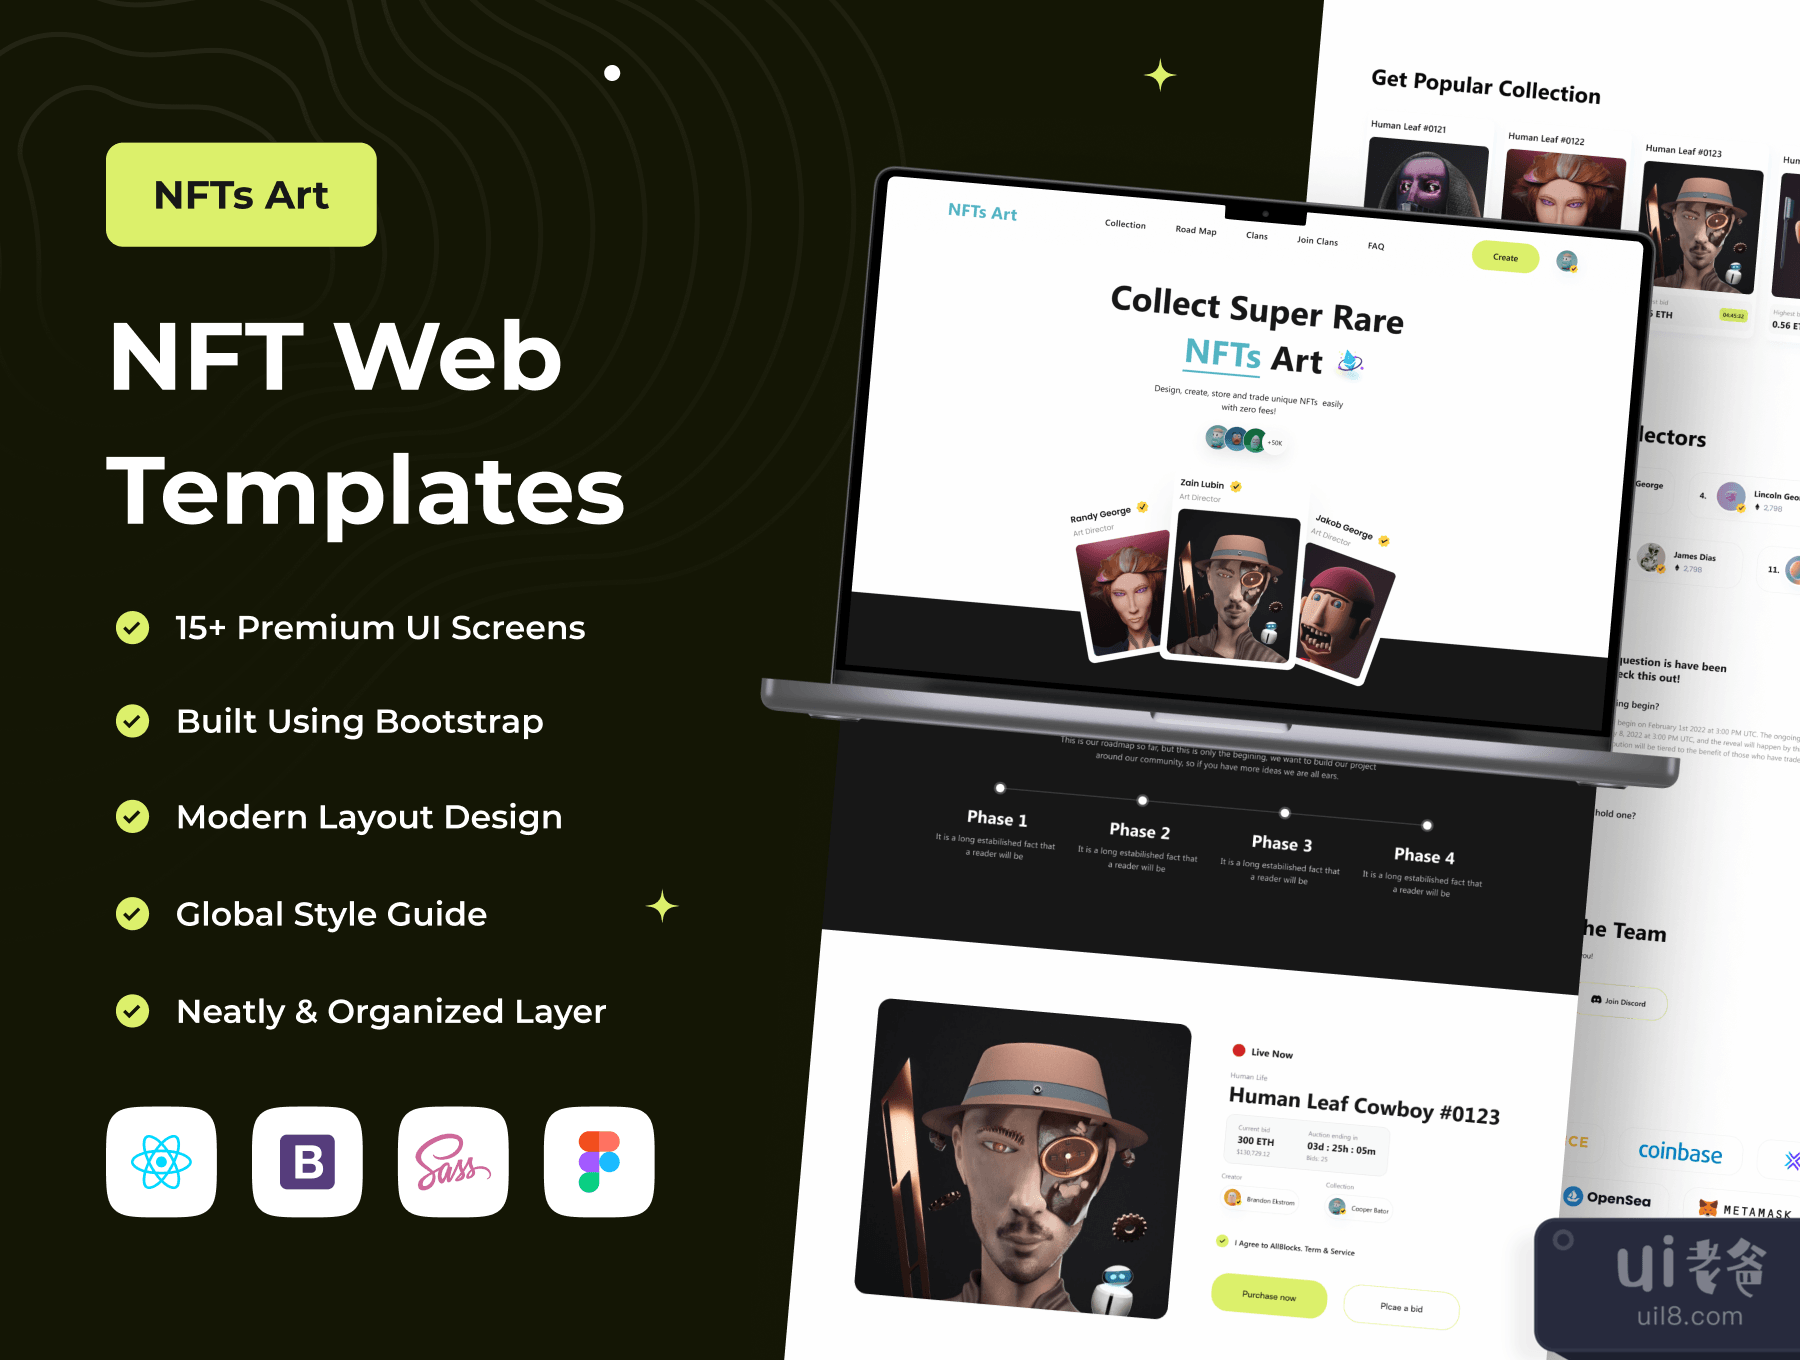 NFTs艺术 - NFT网页模板 (NFTs Art - NFT Web Templates)插图